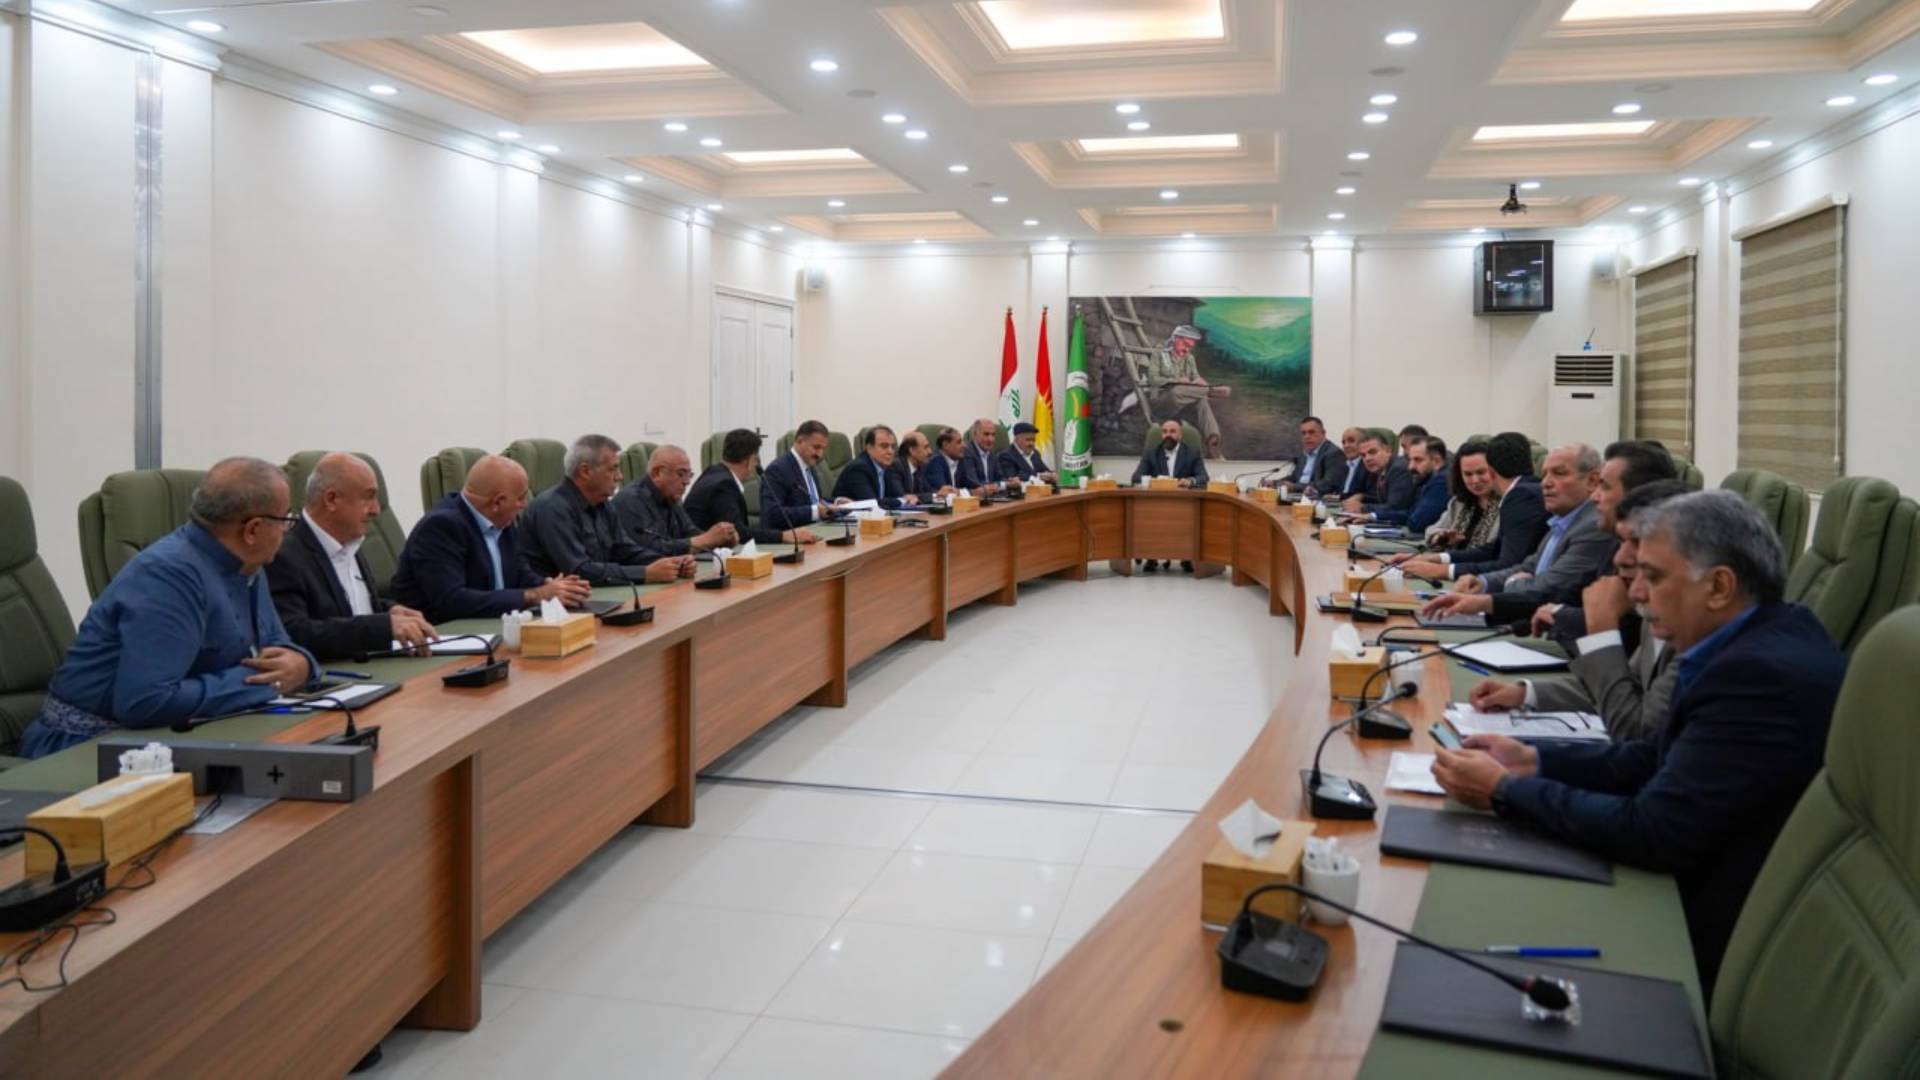  The PUK Politburo's meeting in Kirkuk.